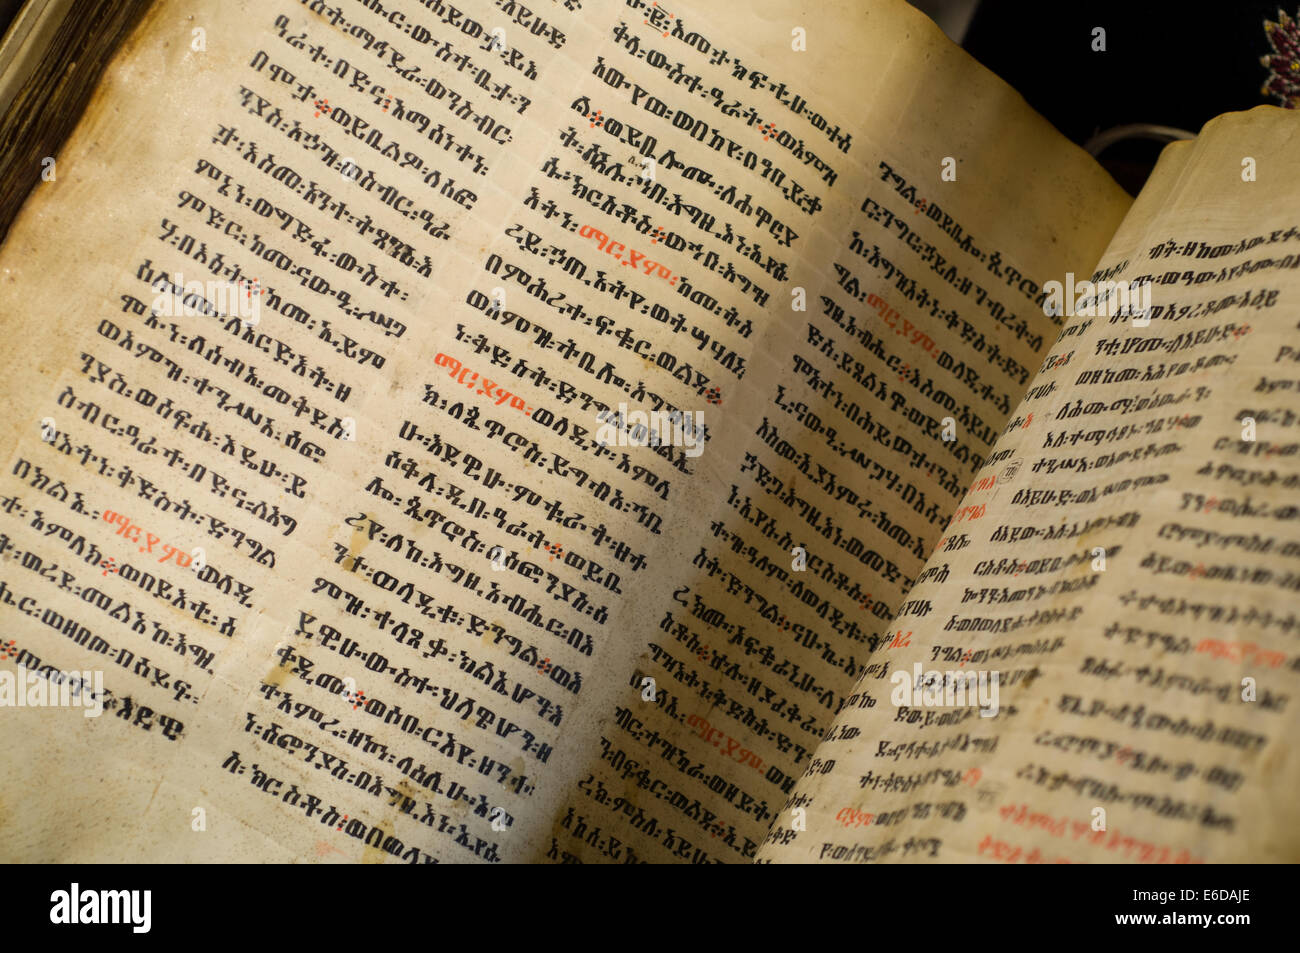 Biblia en mano: Del manuscrito al celular — Biblia y Tereré